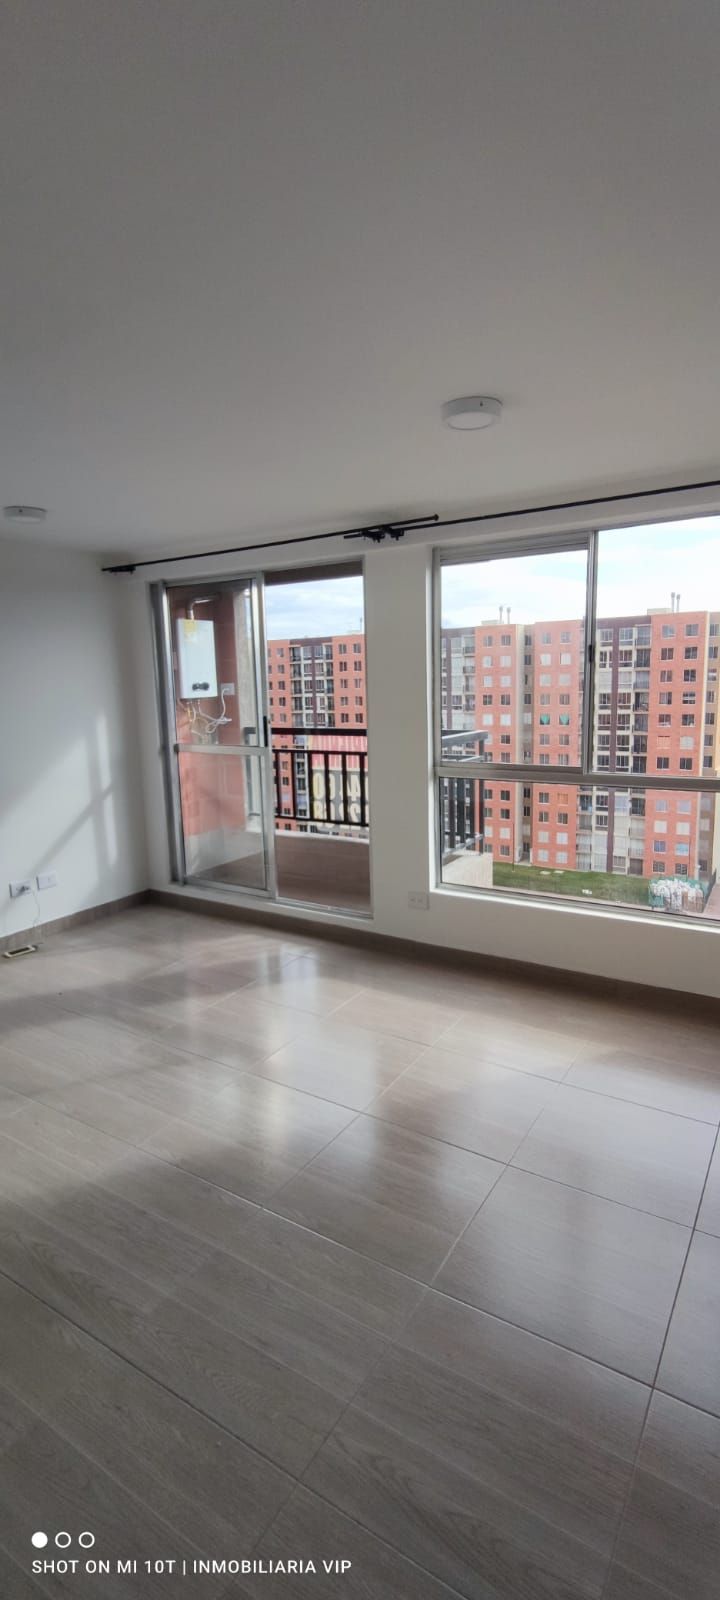 Apartamento en arriendo Madrid 56 m² - $ 950.000